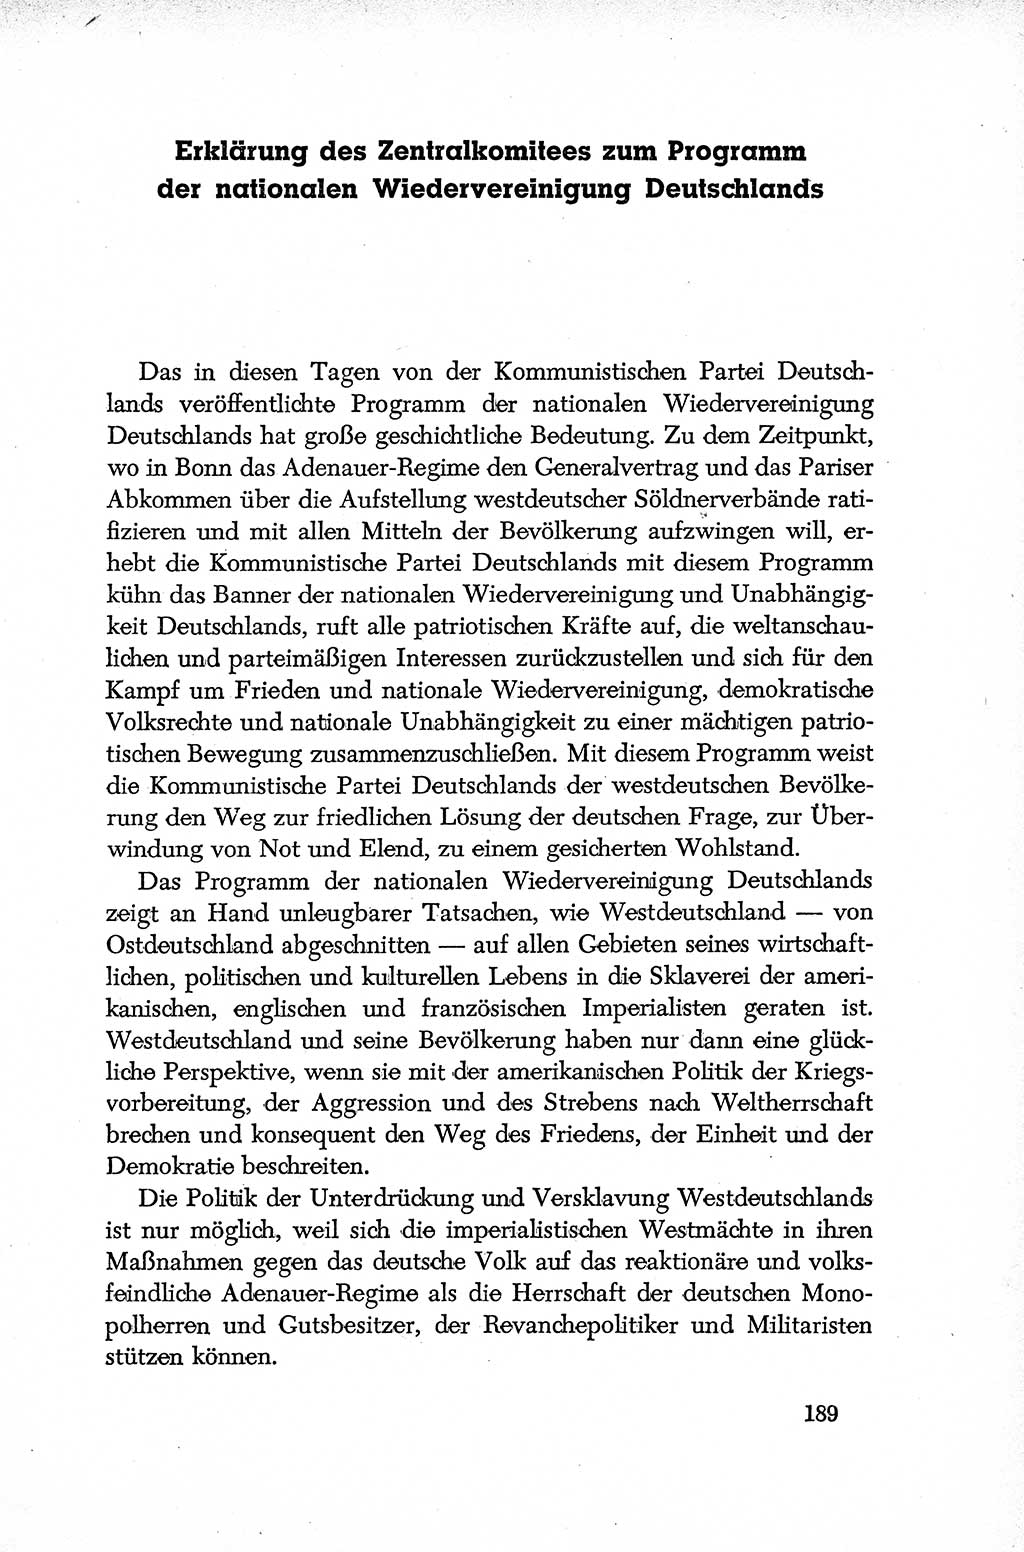 Dokumente der Sozialistischen Einheitspartei Deutschlands (SED) [Deutsche Demokratische Republik (DDR)] 1952-1953, Seite 189 (Dok. SED DDR 1952-1953, S. 189)